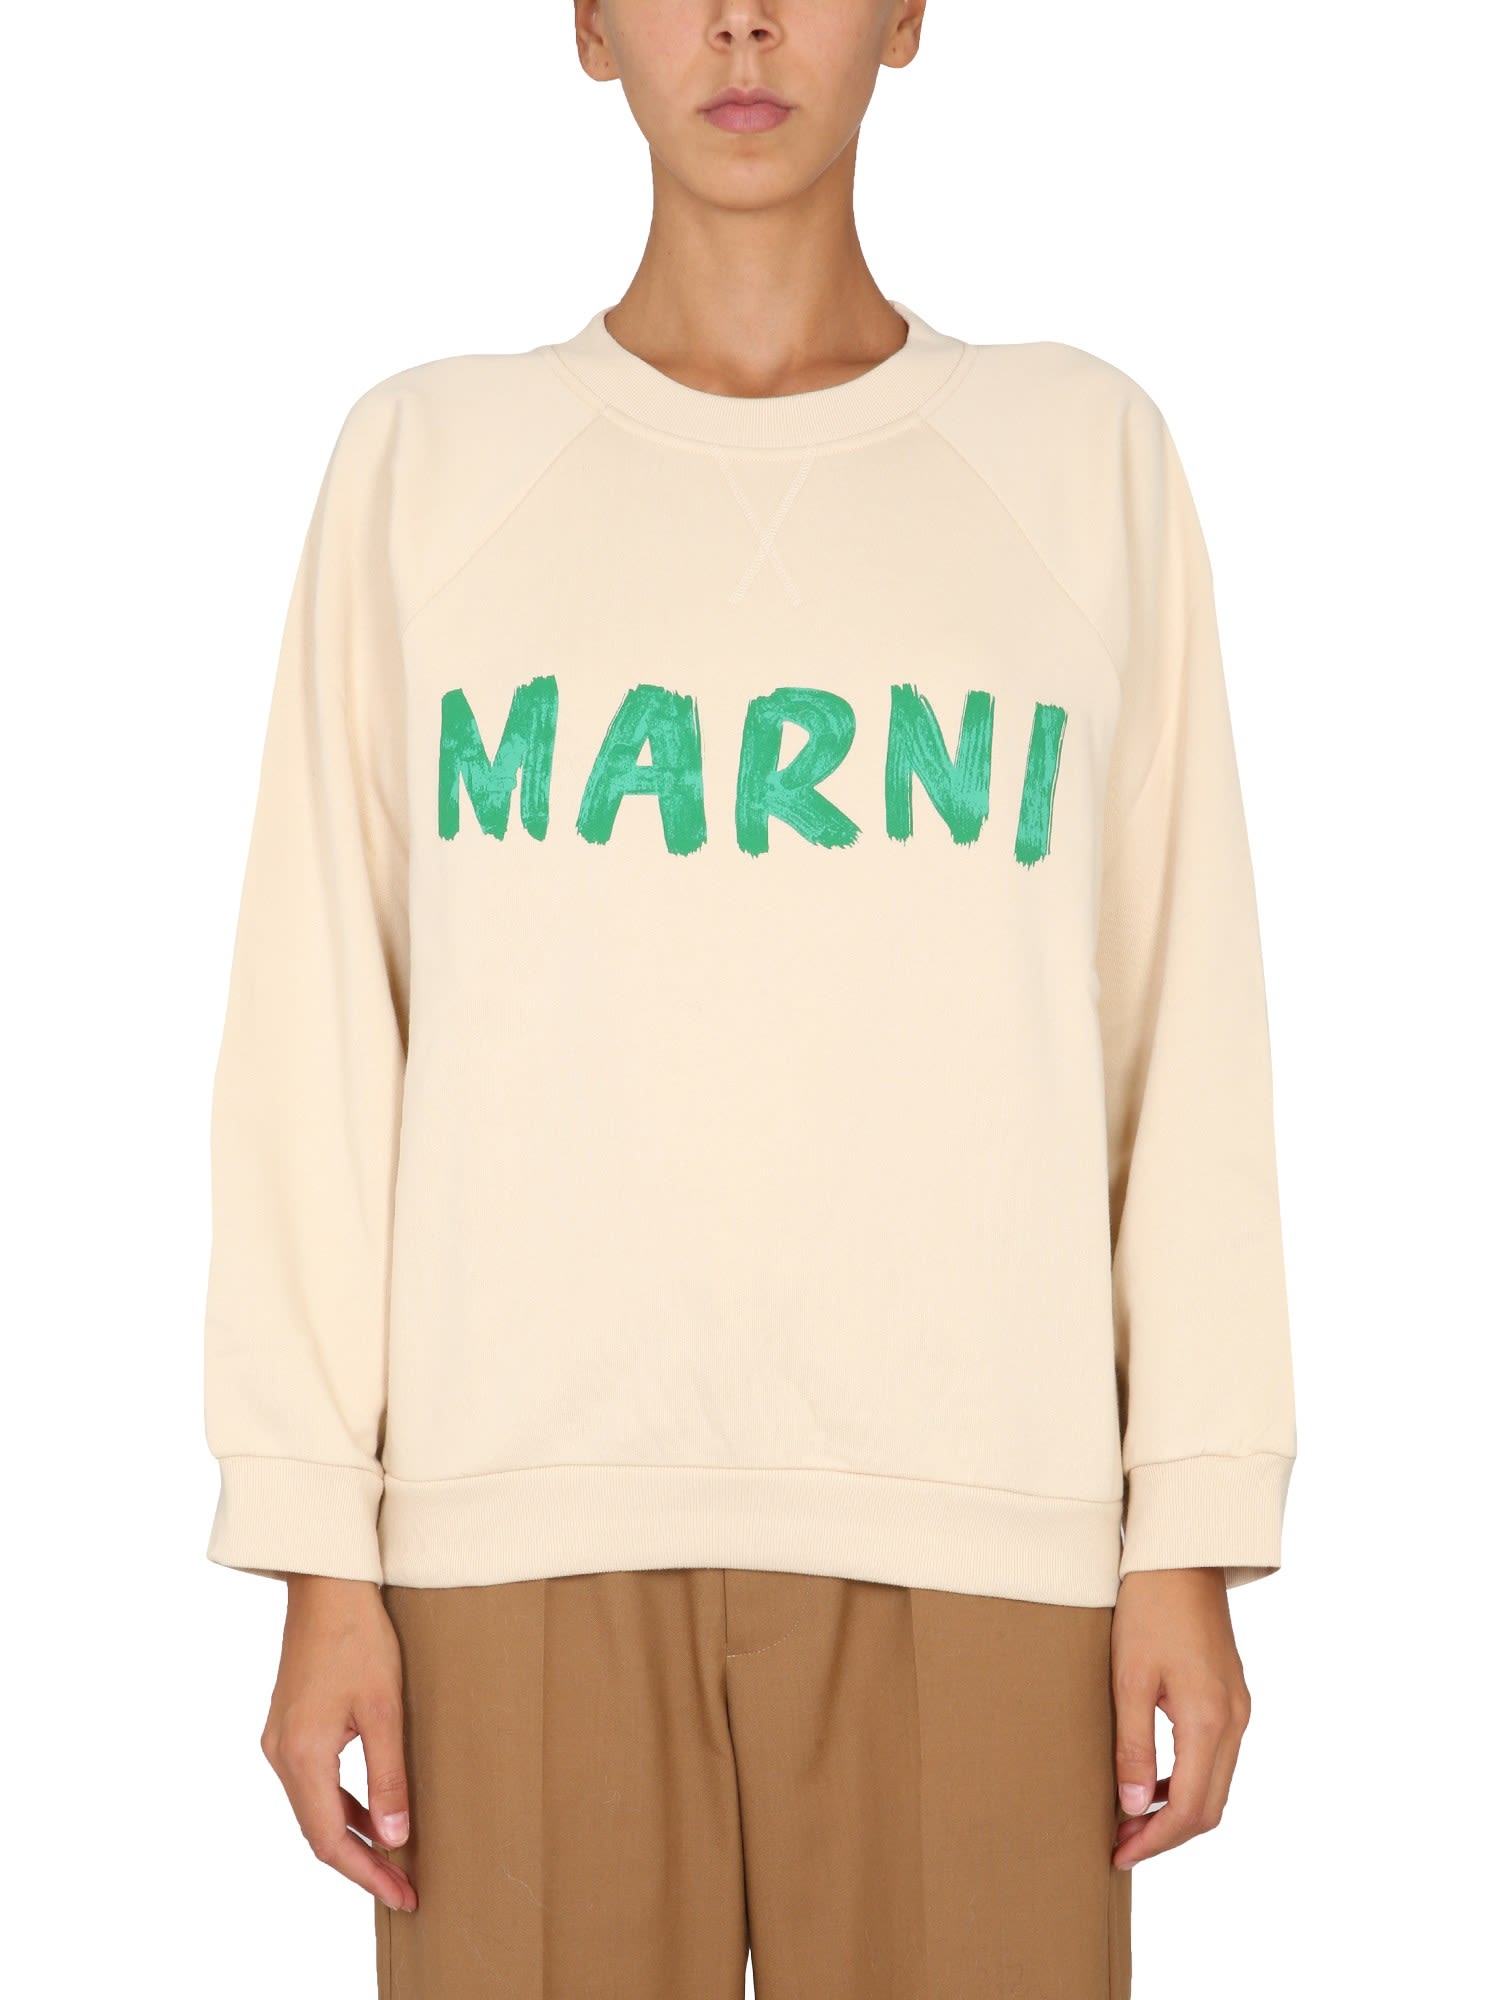 Marni Sweatshirt With Print